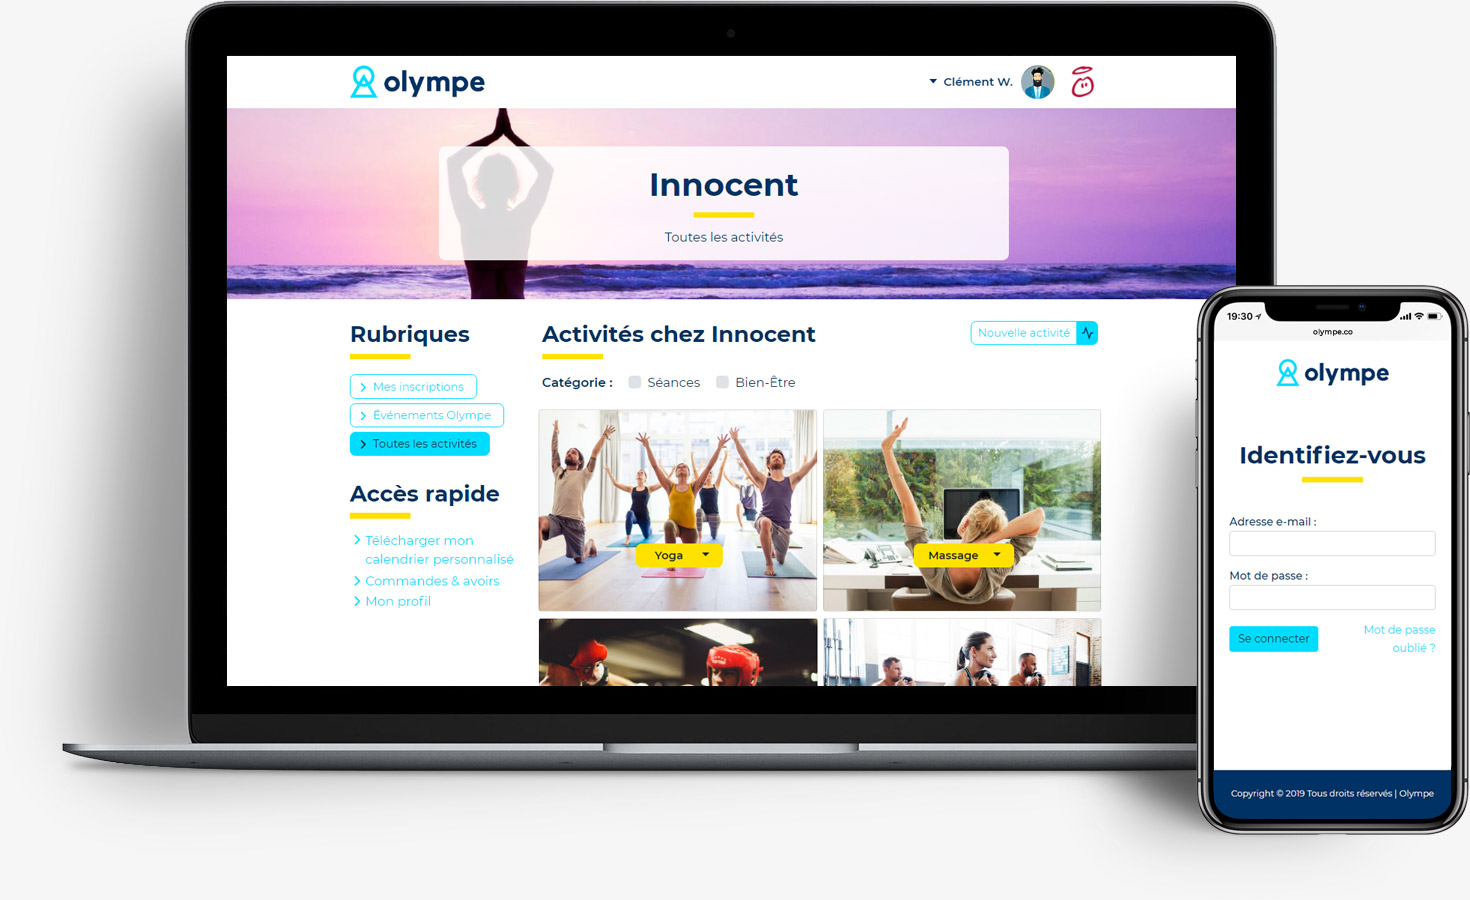 Capture d'écran de la plate-forme Olympe, présentant les activités disponibles sur ordinateur de bureau et la page d'identification sur mobile